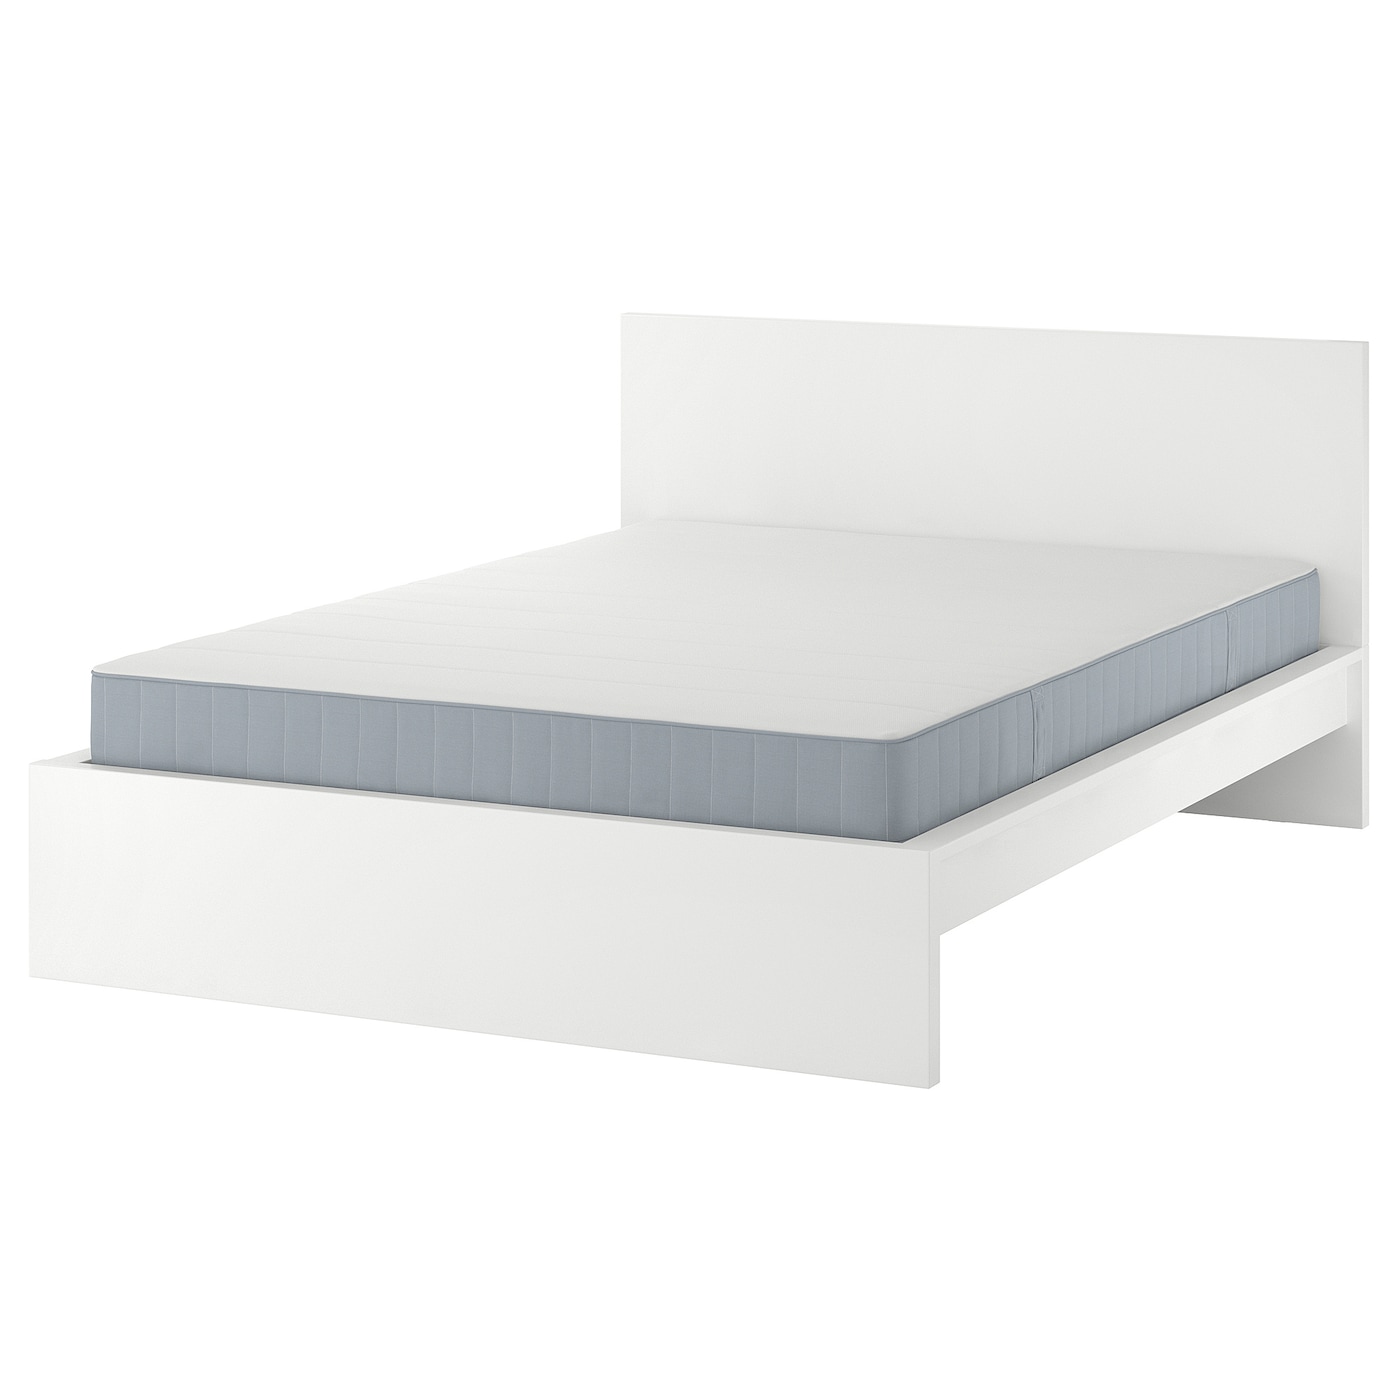 Кровать - IKEA MALM, 200х180 см, матрас средне-жесткий, белый, МАЛЬМ ИКЕА